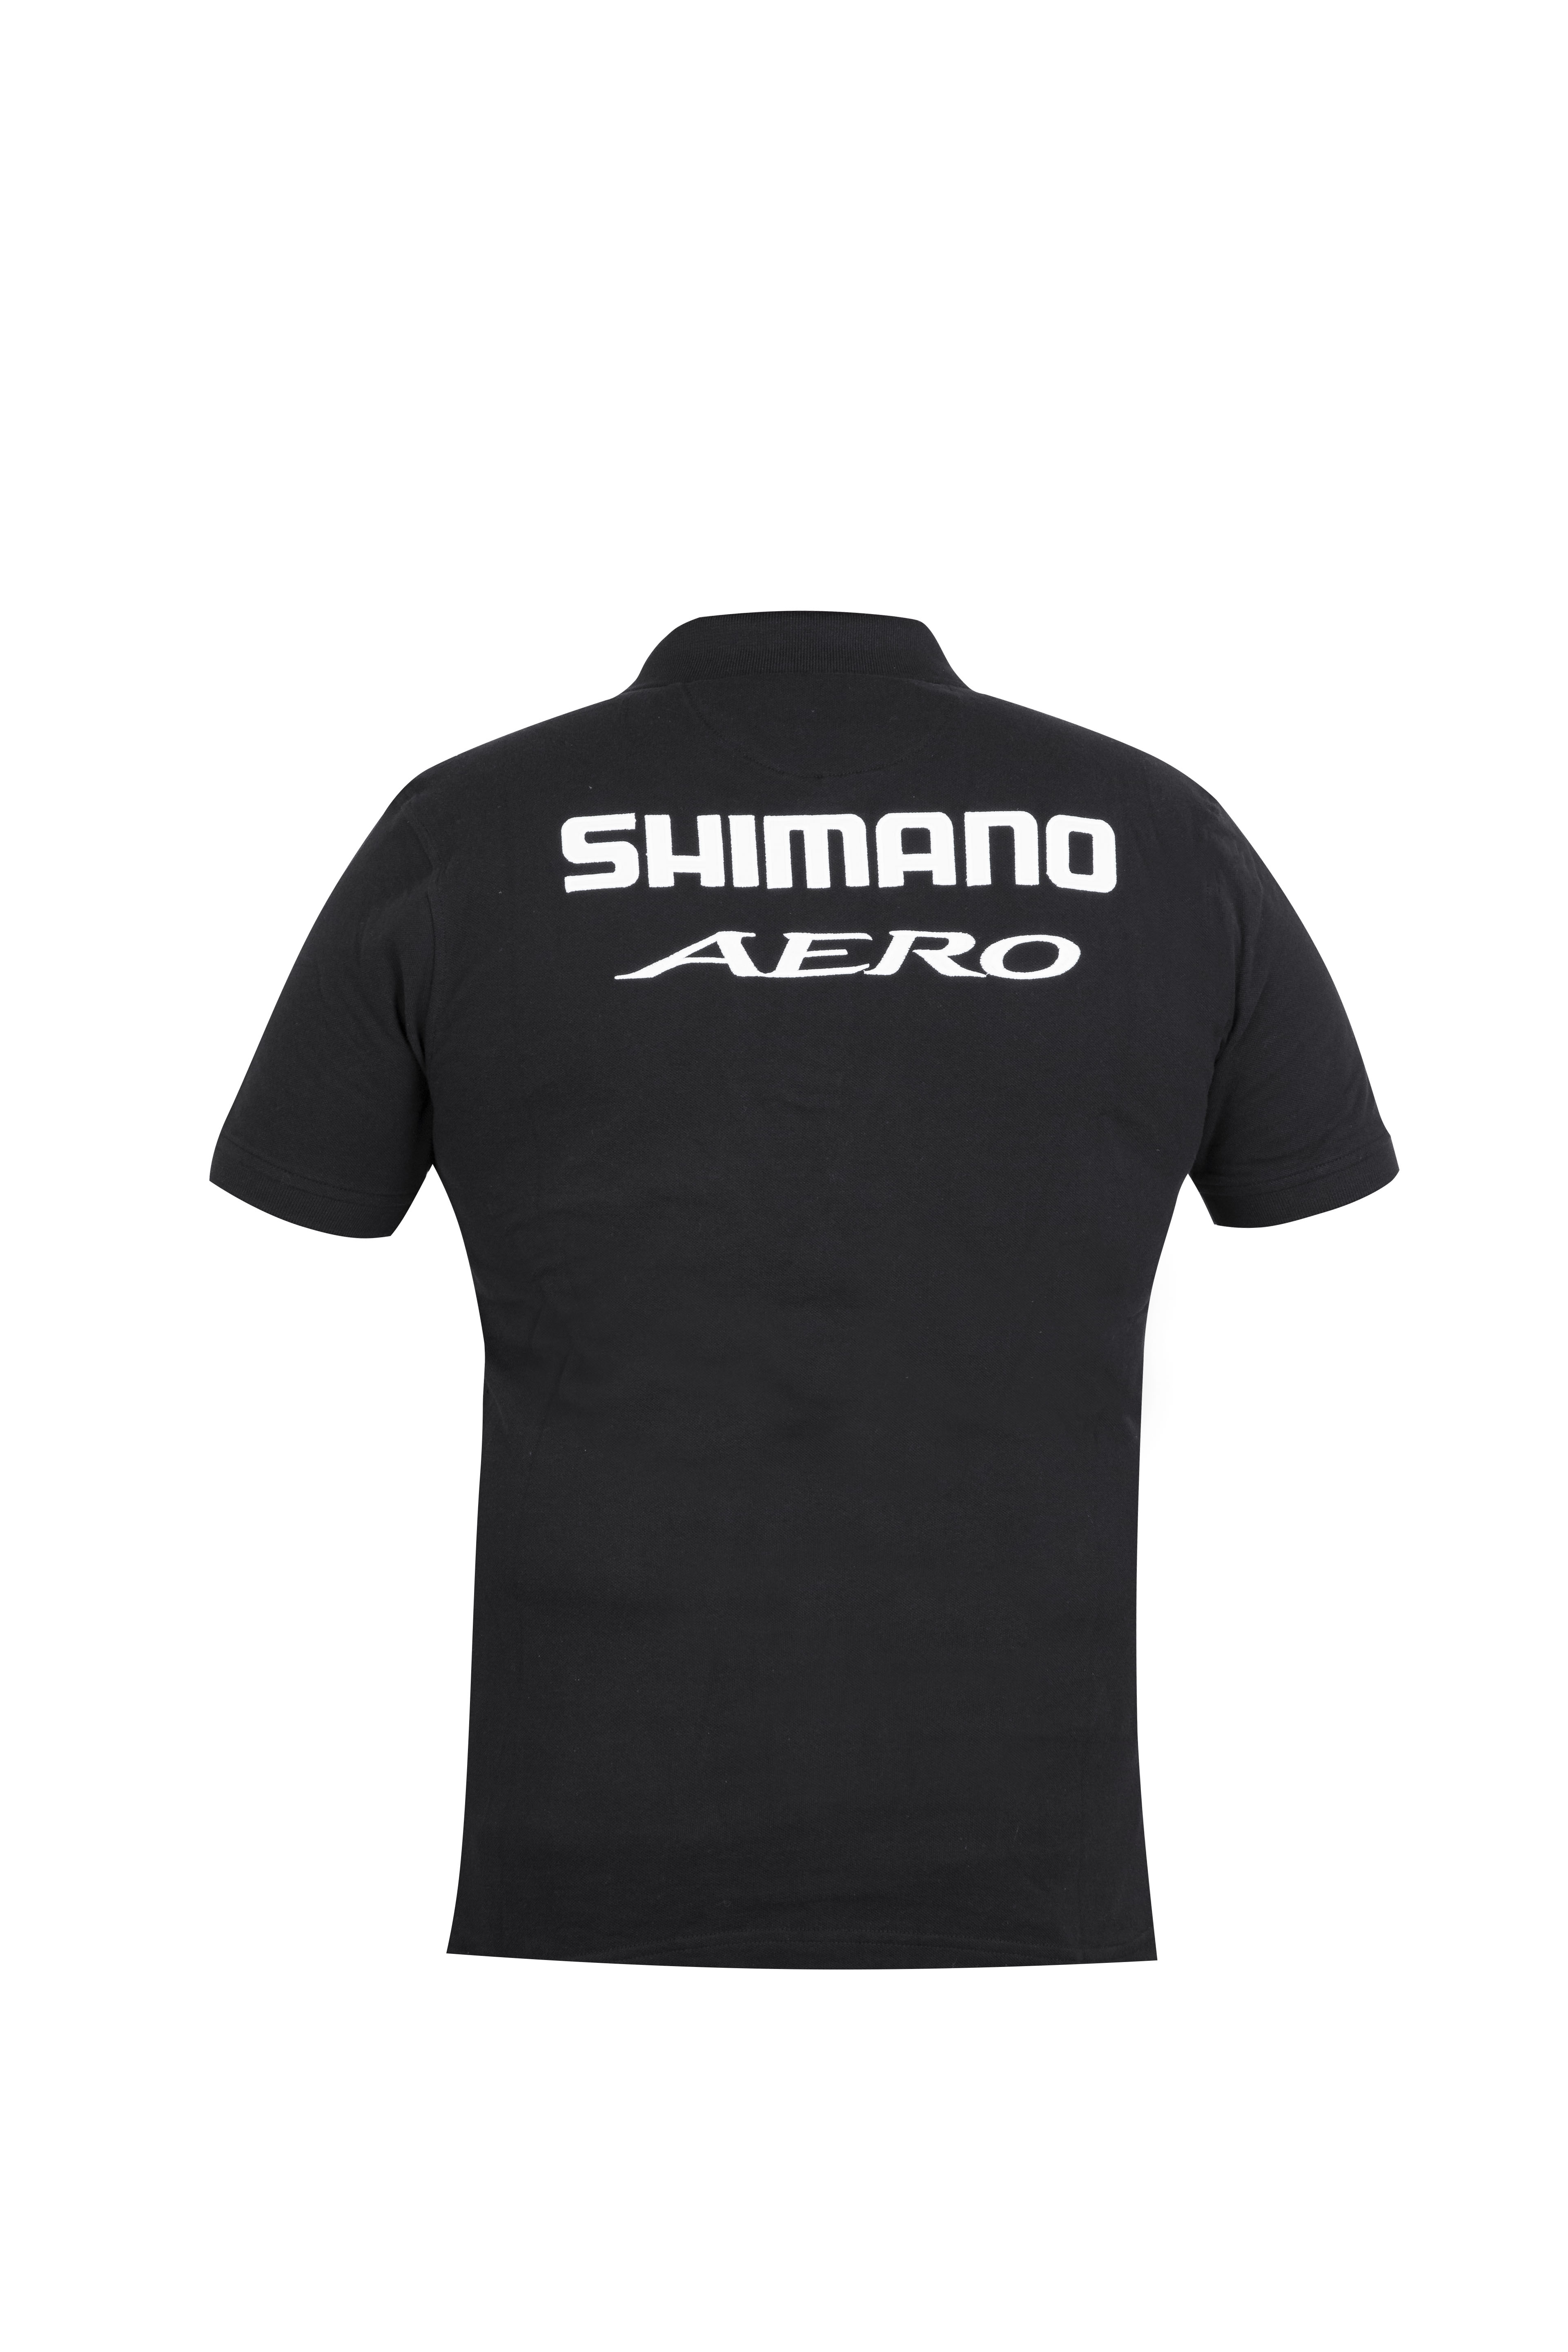 Shimano Aero Polo 2020 Negra